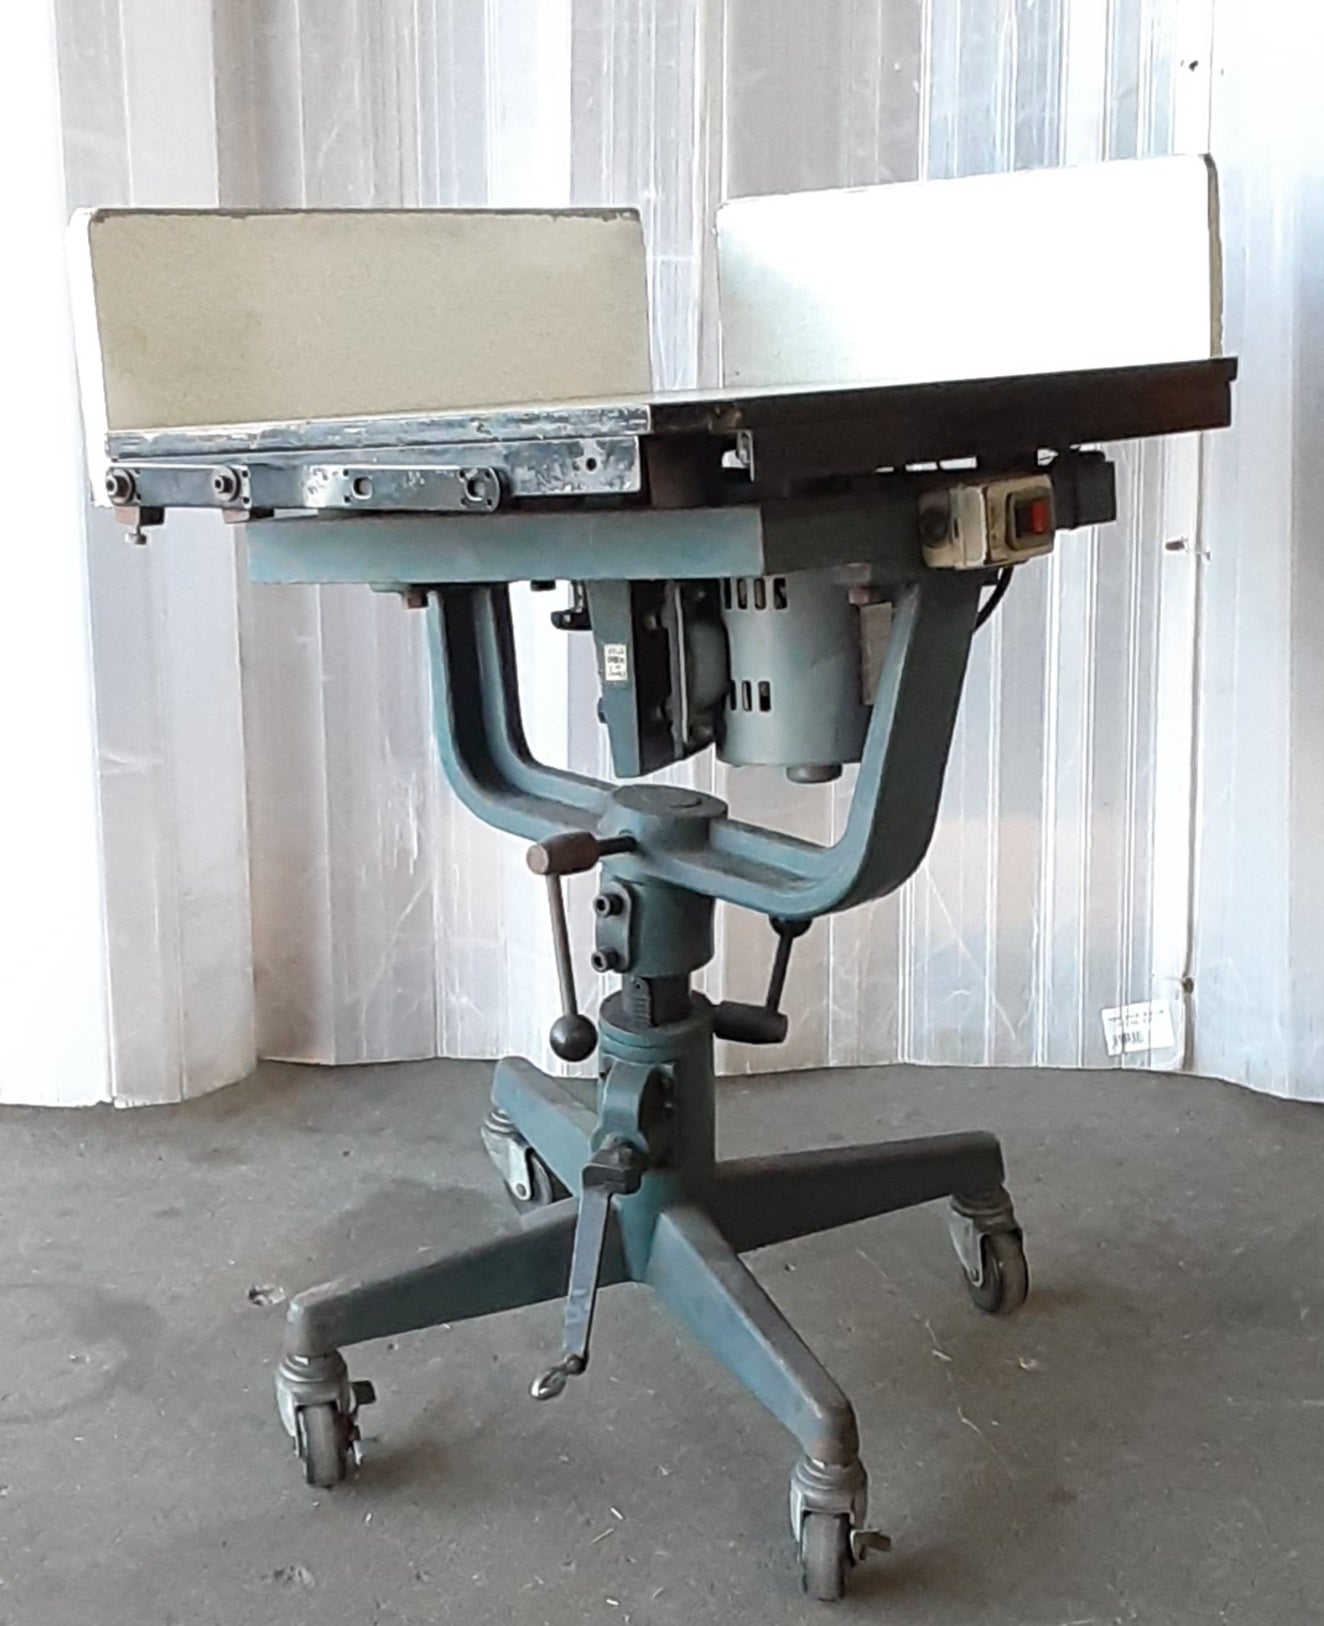 ジョガー(紙揃え機 突き揃え機) テーブル寸法490×650mm キャスター付き メーカー不明